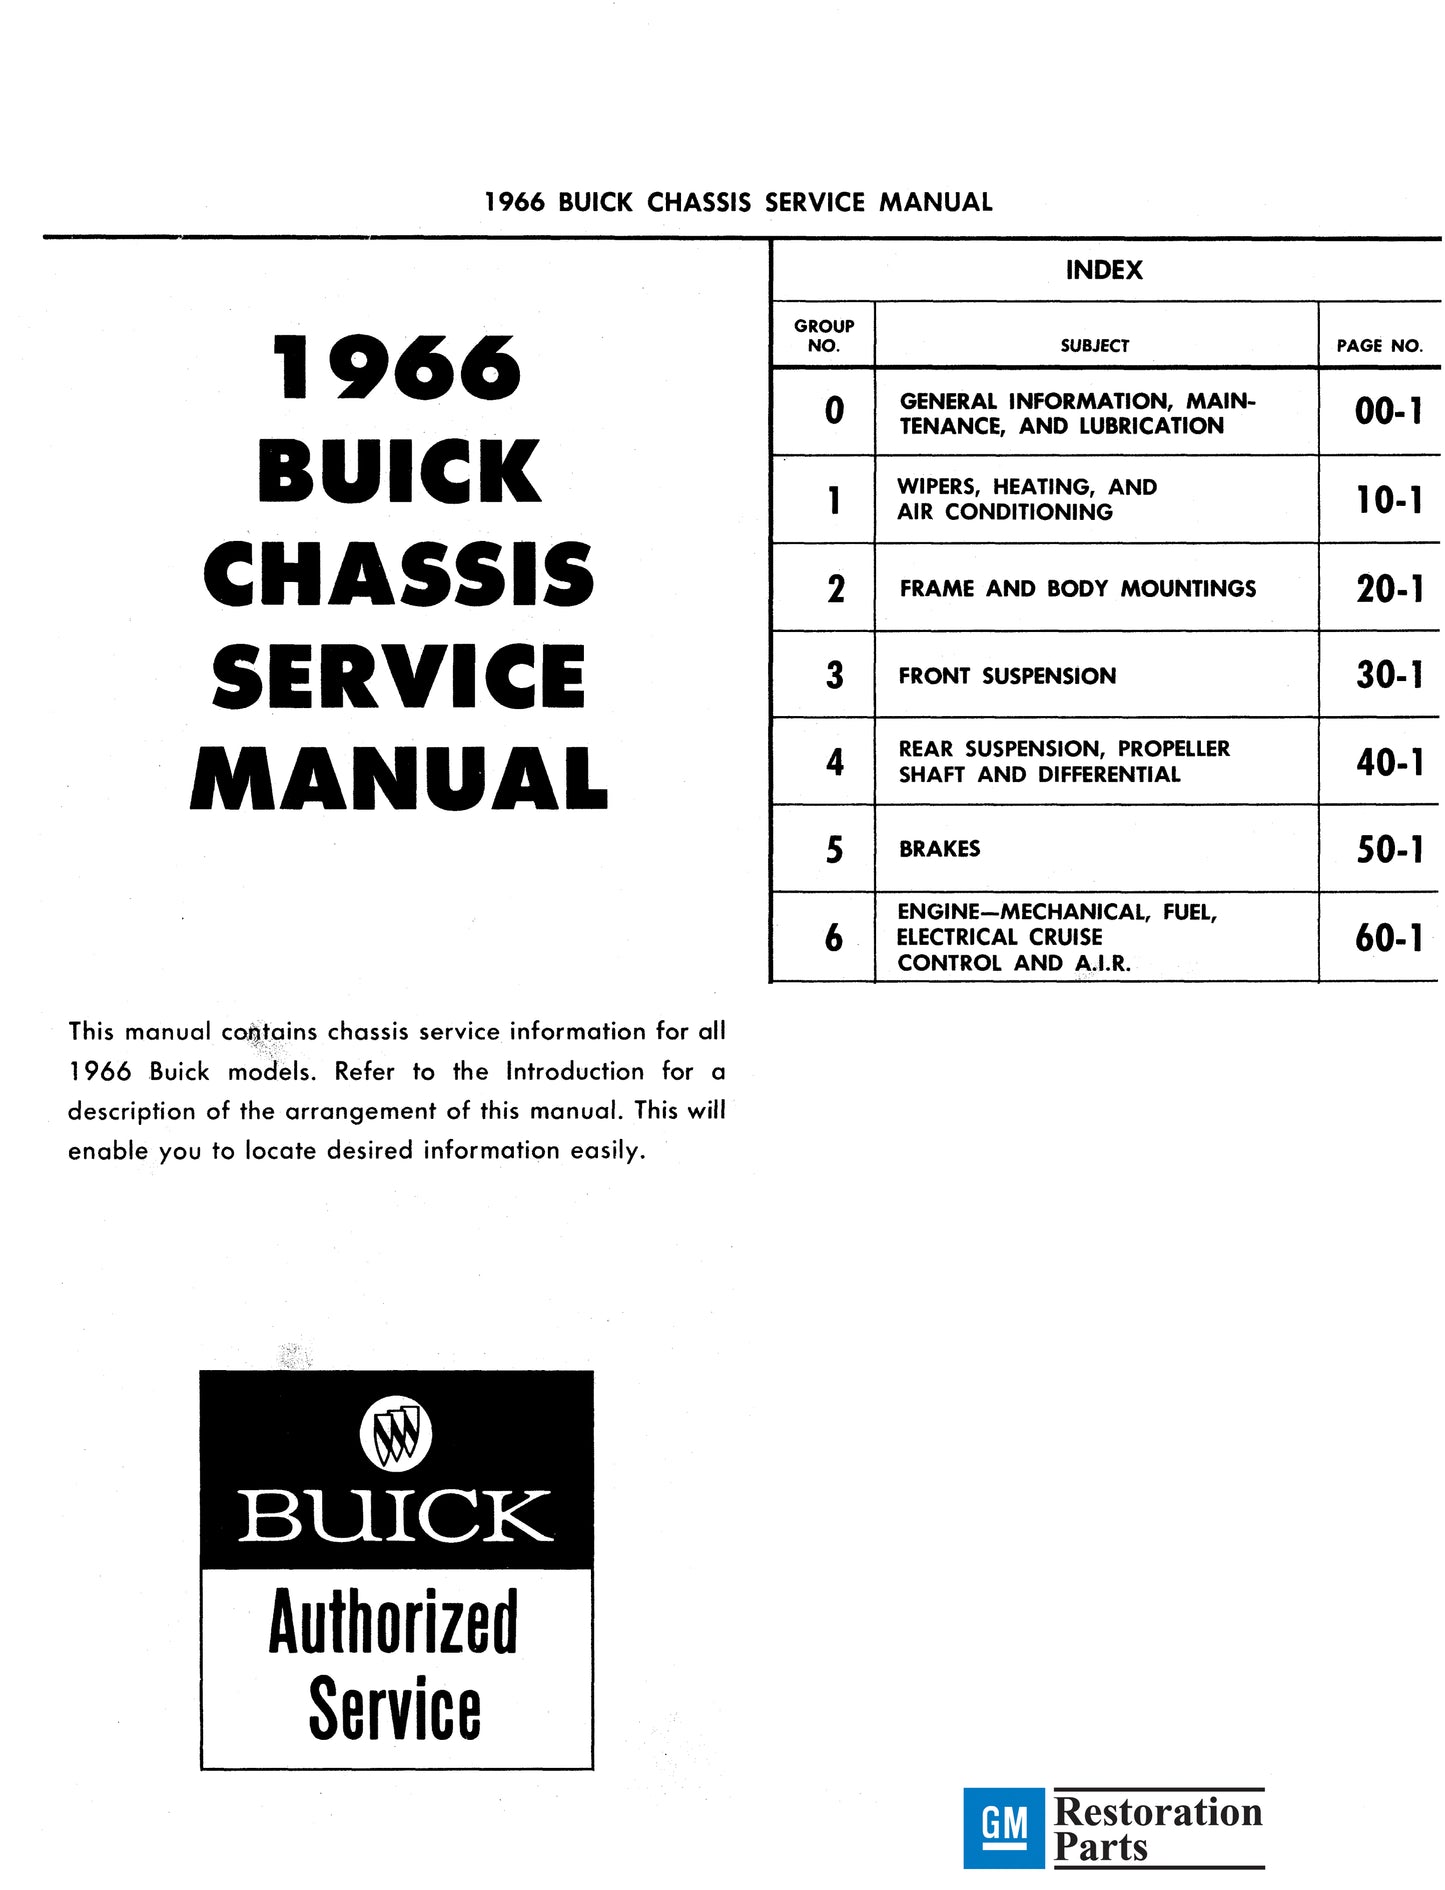 1966 Buick Repair Manual And Body Manual All Models